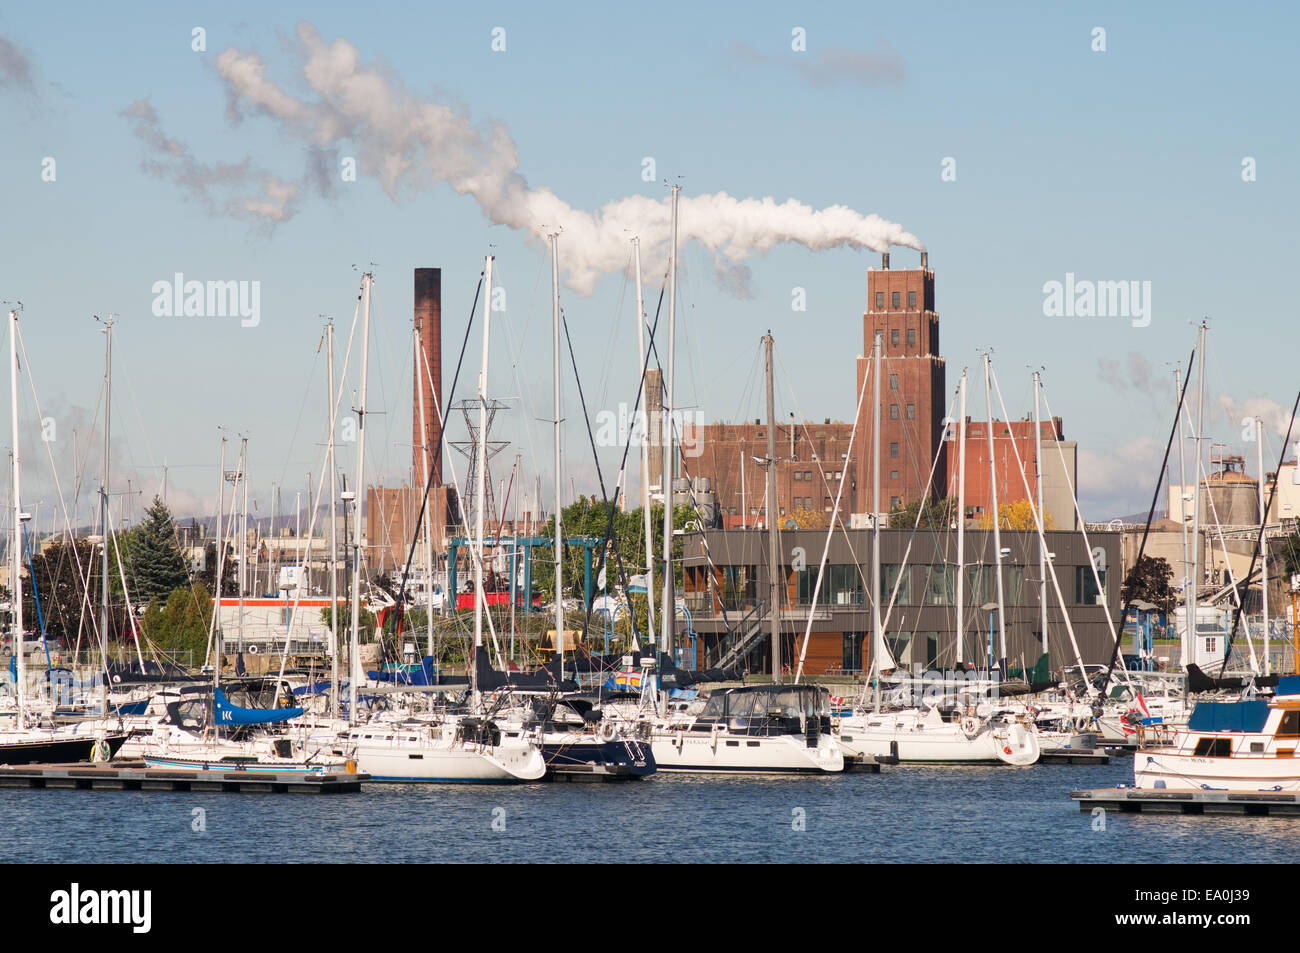 Papiers Stadacona Papierfabrik gesehen in der Marina in Quebec Stadt, Quebec, Kanada Stockfoto